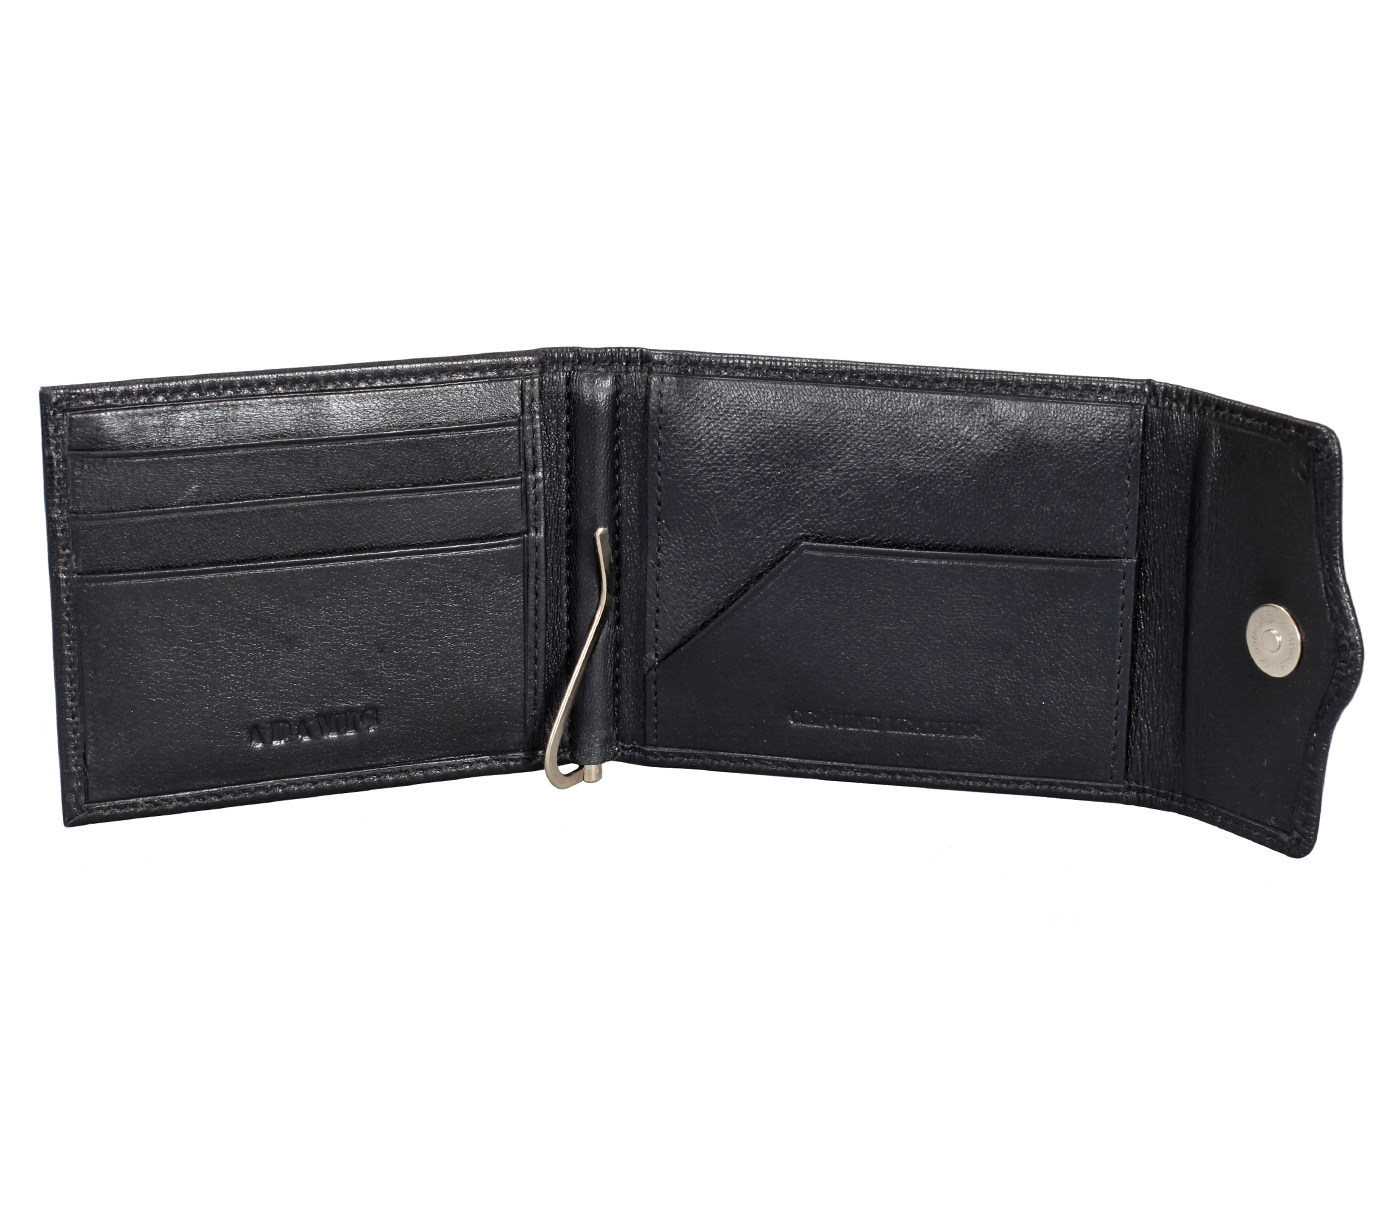 W328-Noah-Men's bifold money clip wallet in Genuine Leather - Black